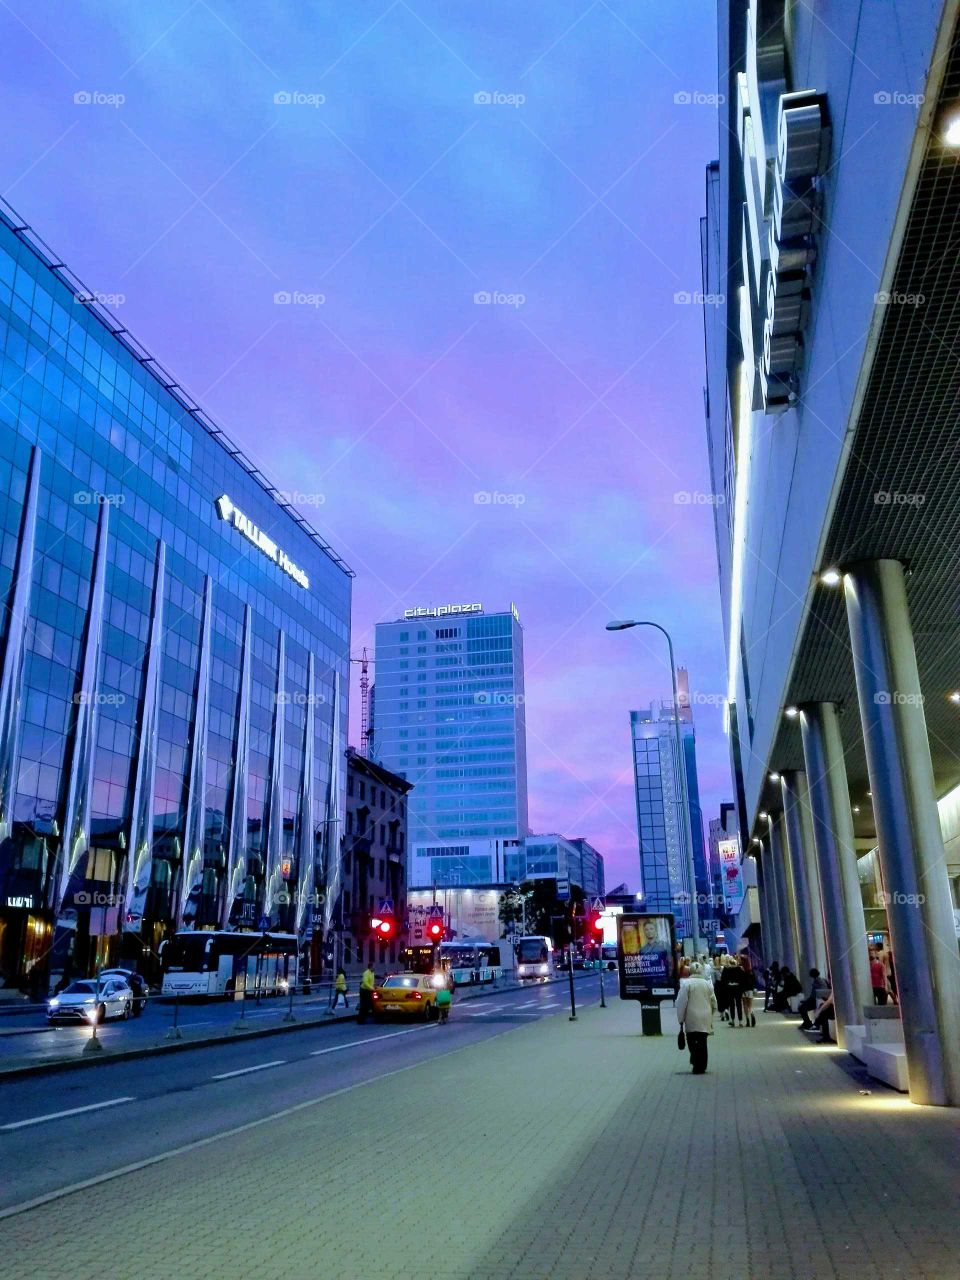 Tallinn City center